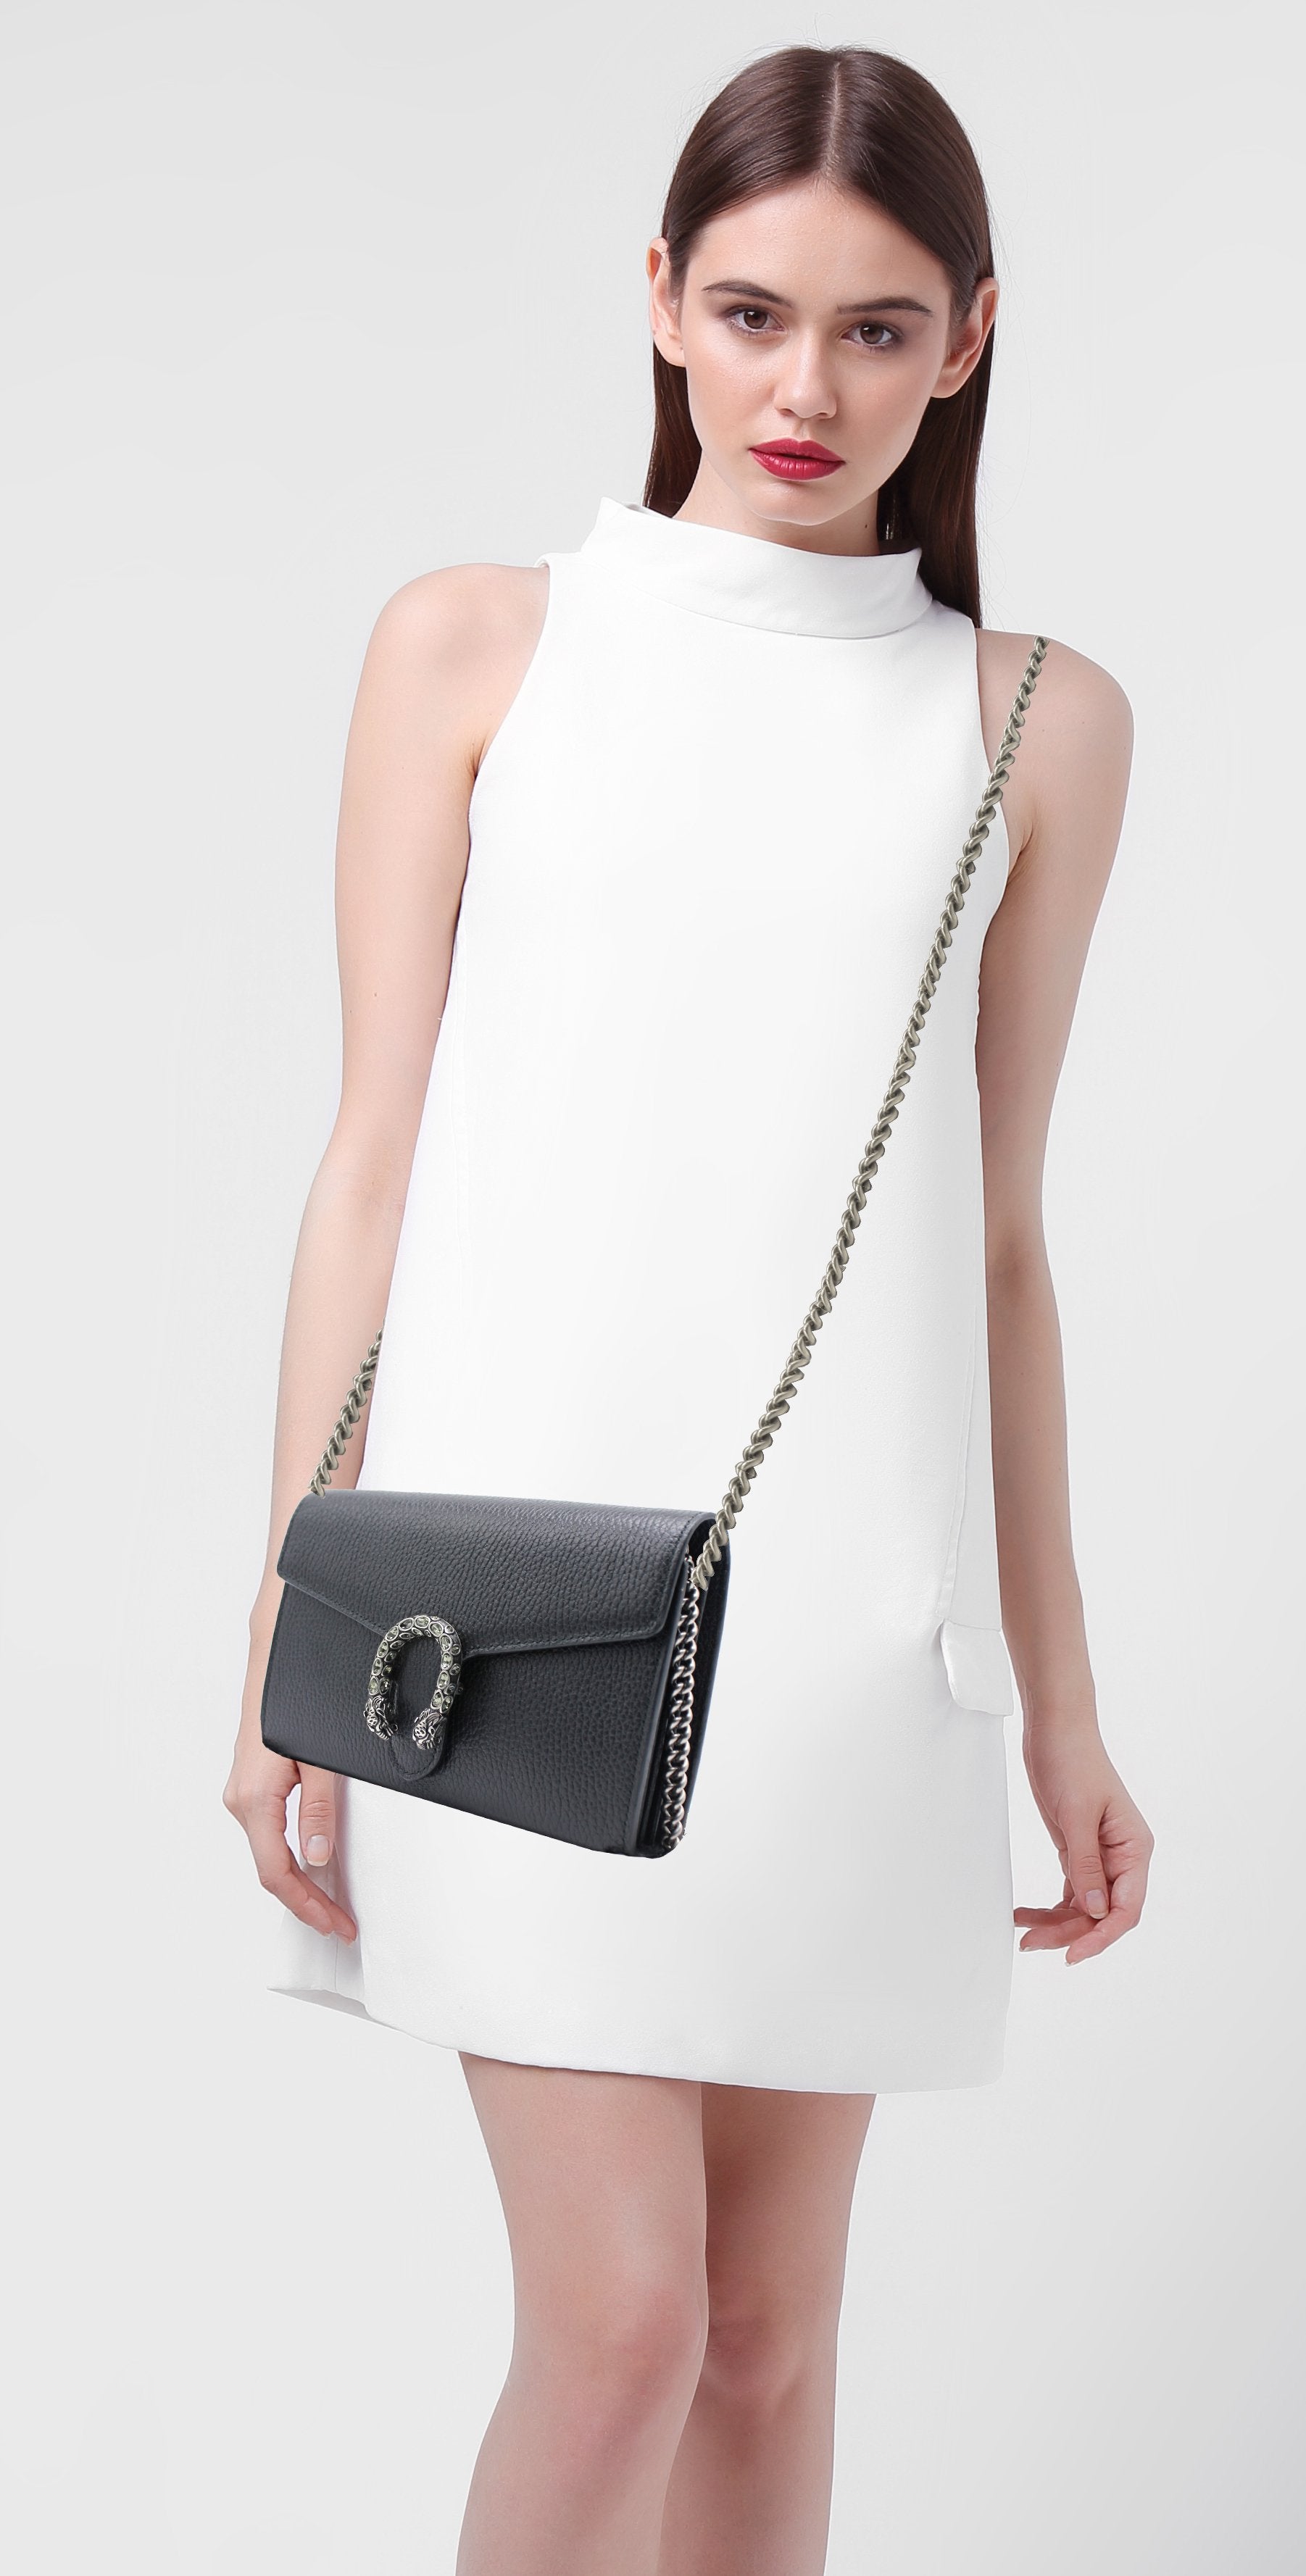 Gucci Dionysus leather mini chain bag